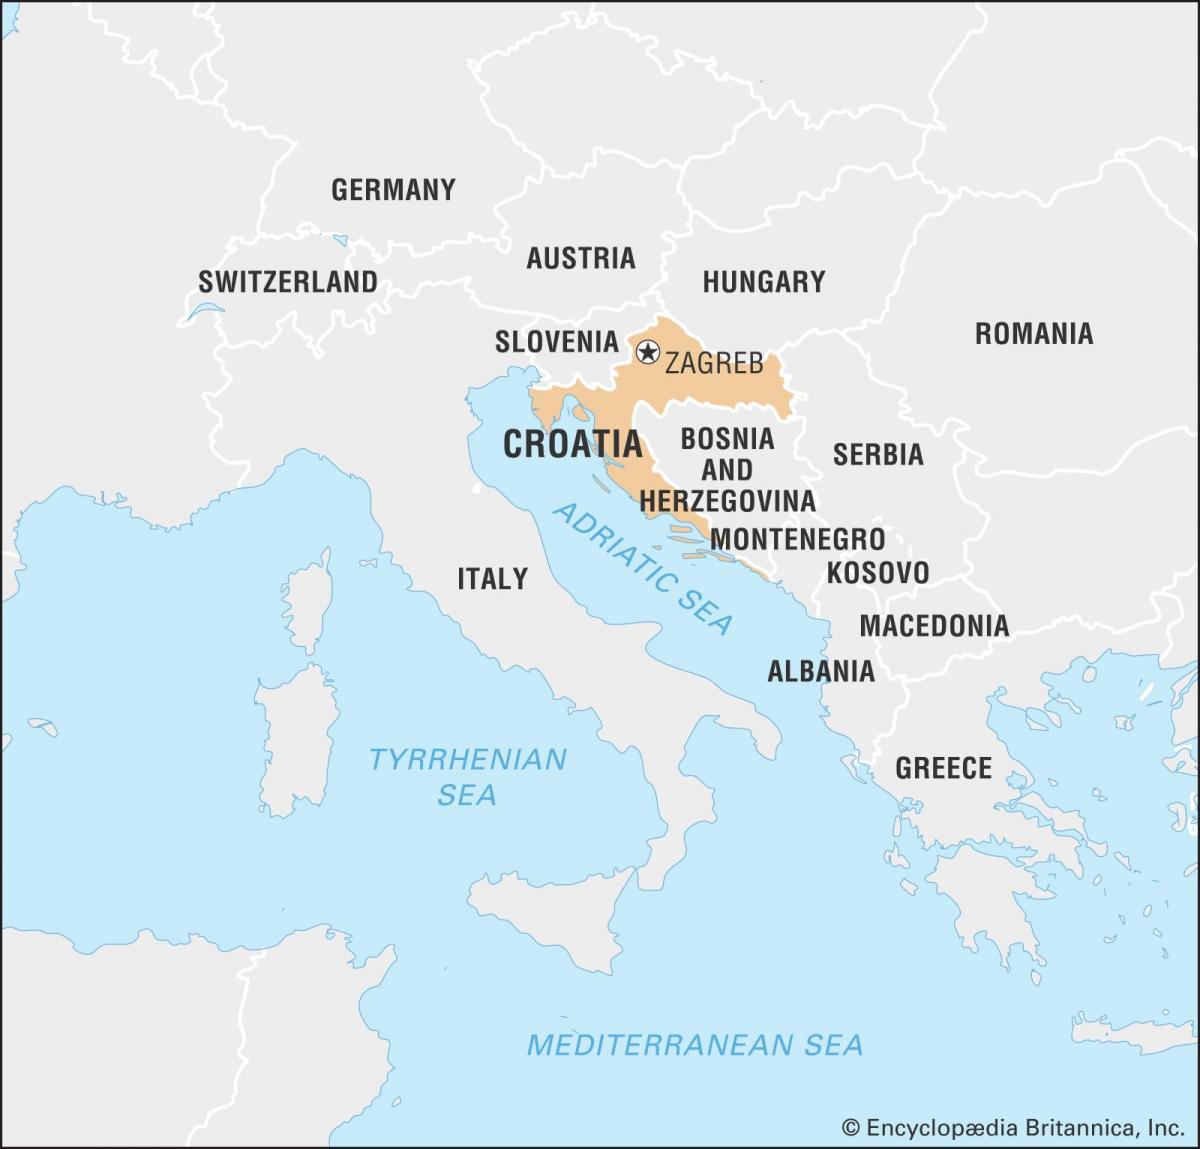 Karte von Kroatien und den angrenzenden Ländern